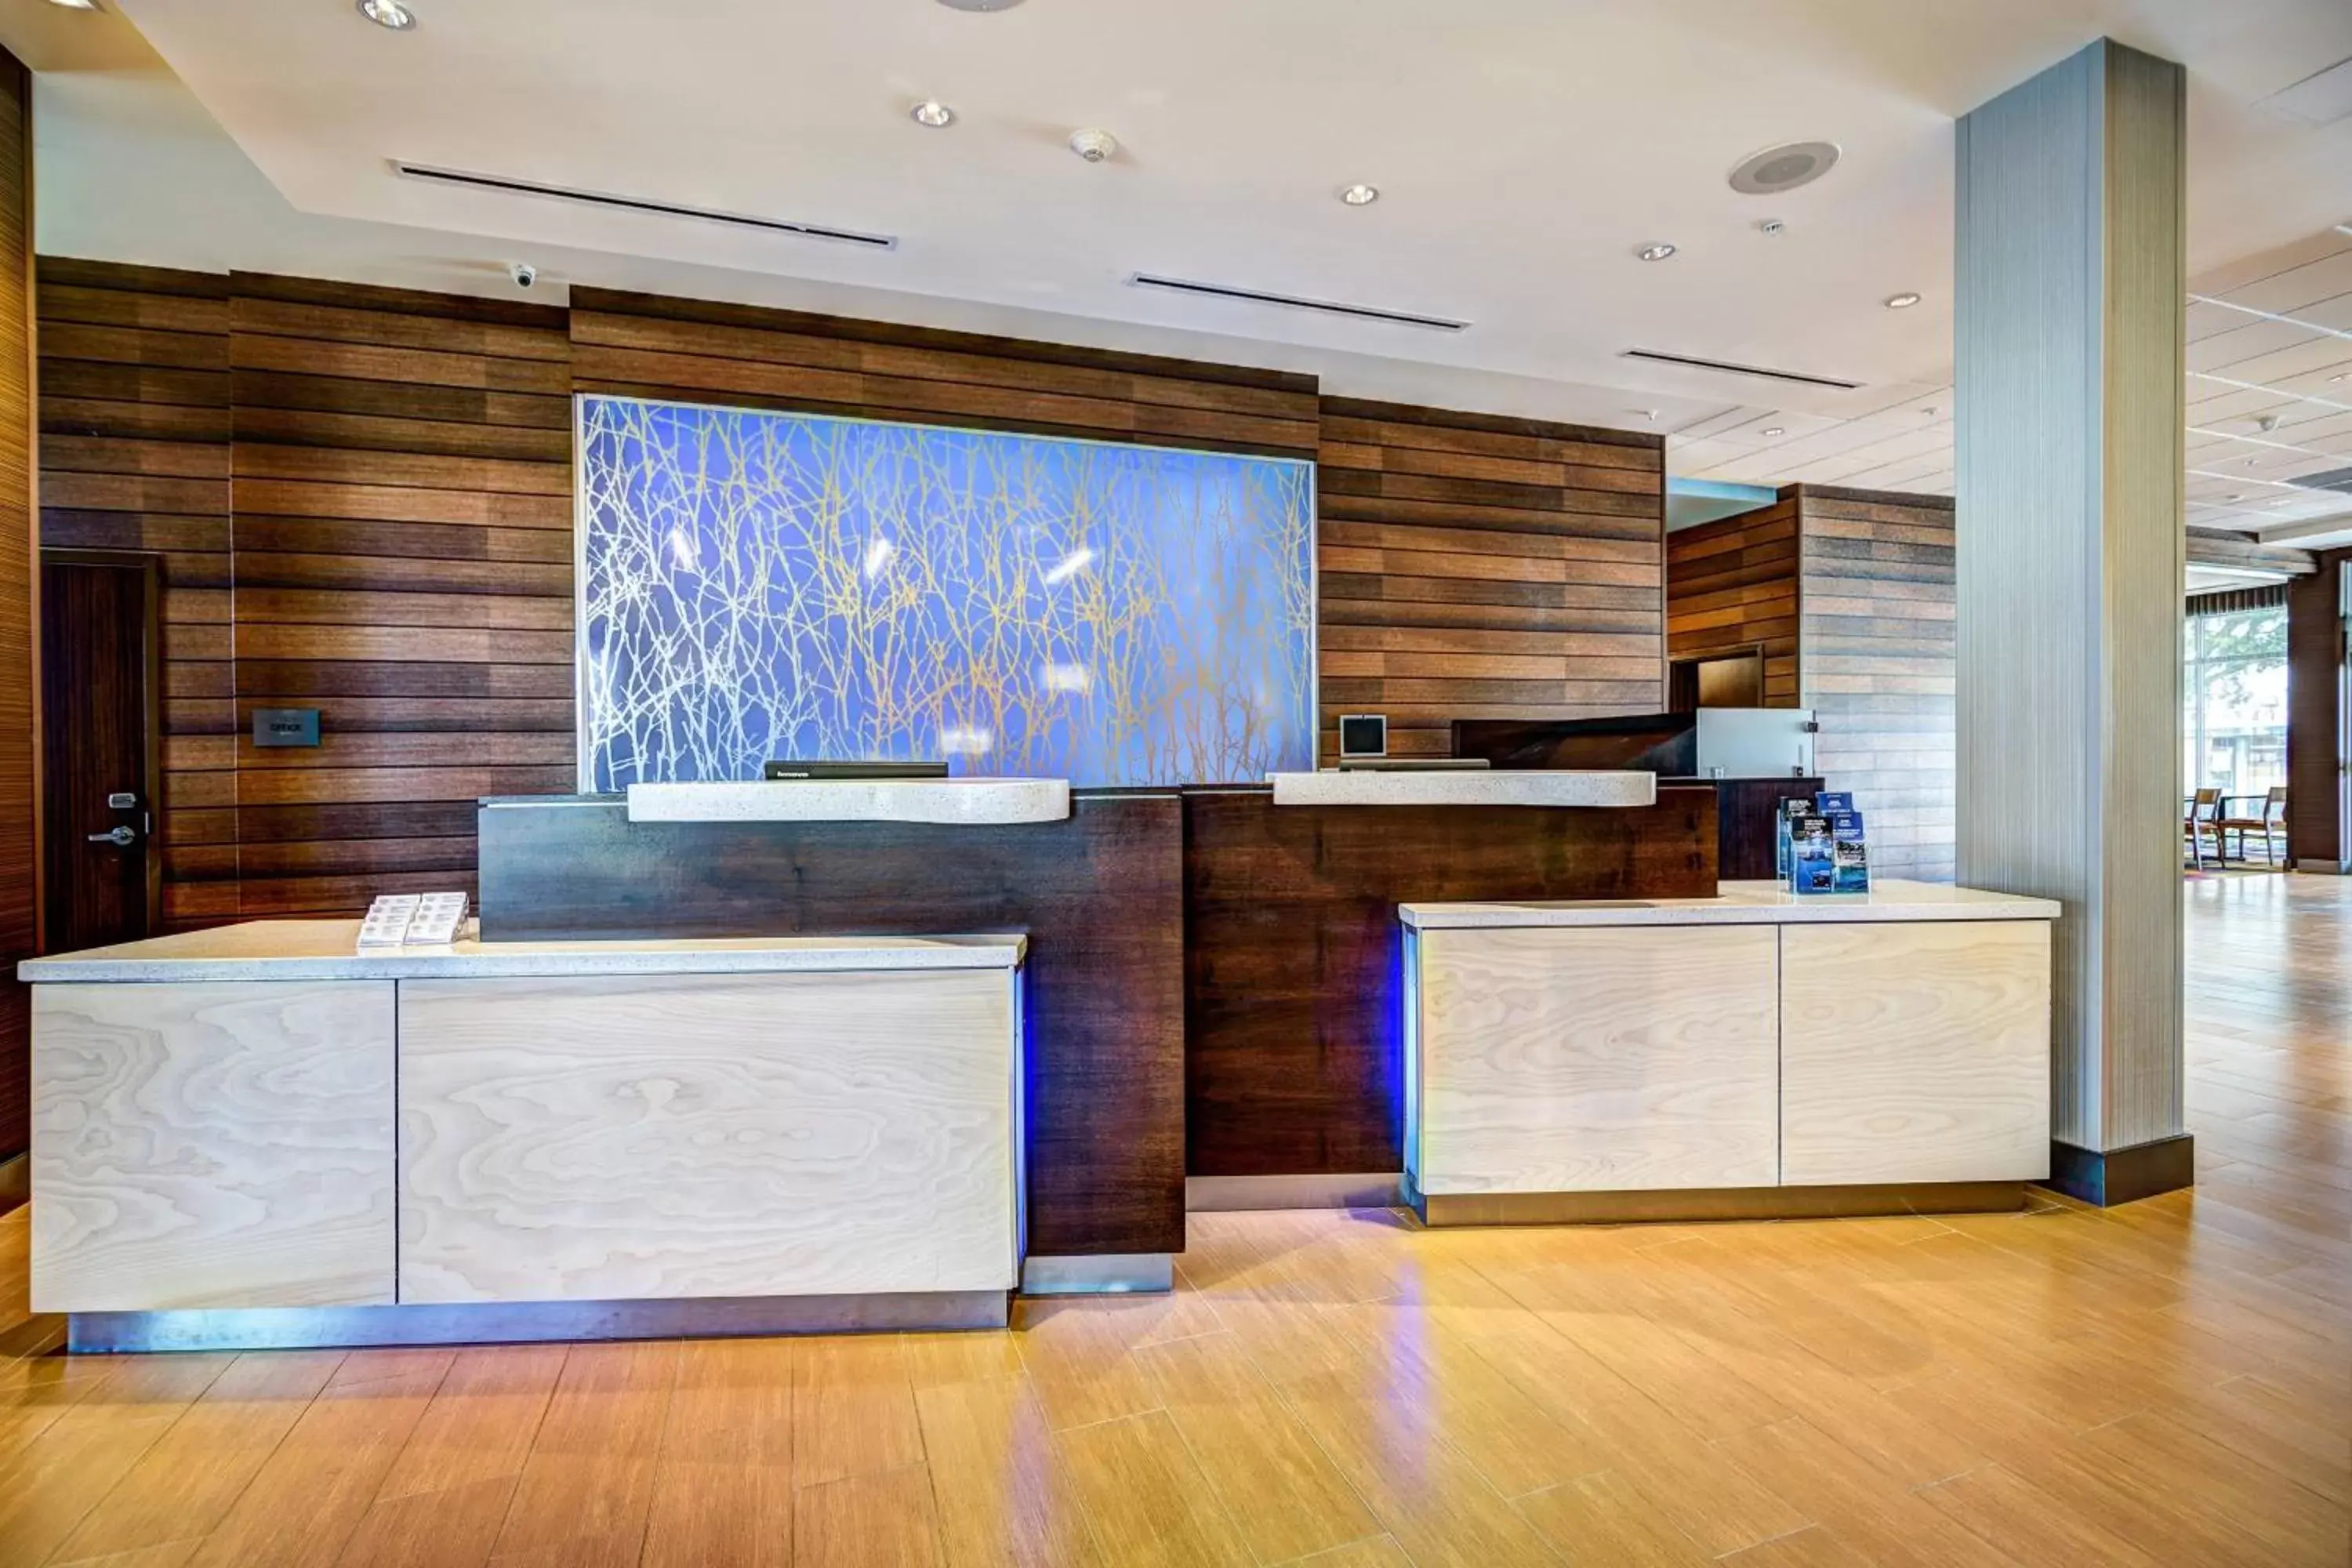 Lobby or reception in Fairfield Inn & Suites by Marriott Delray Beach I-95